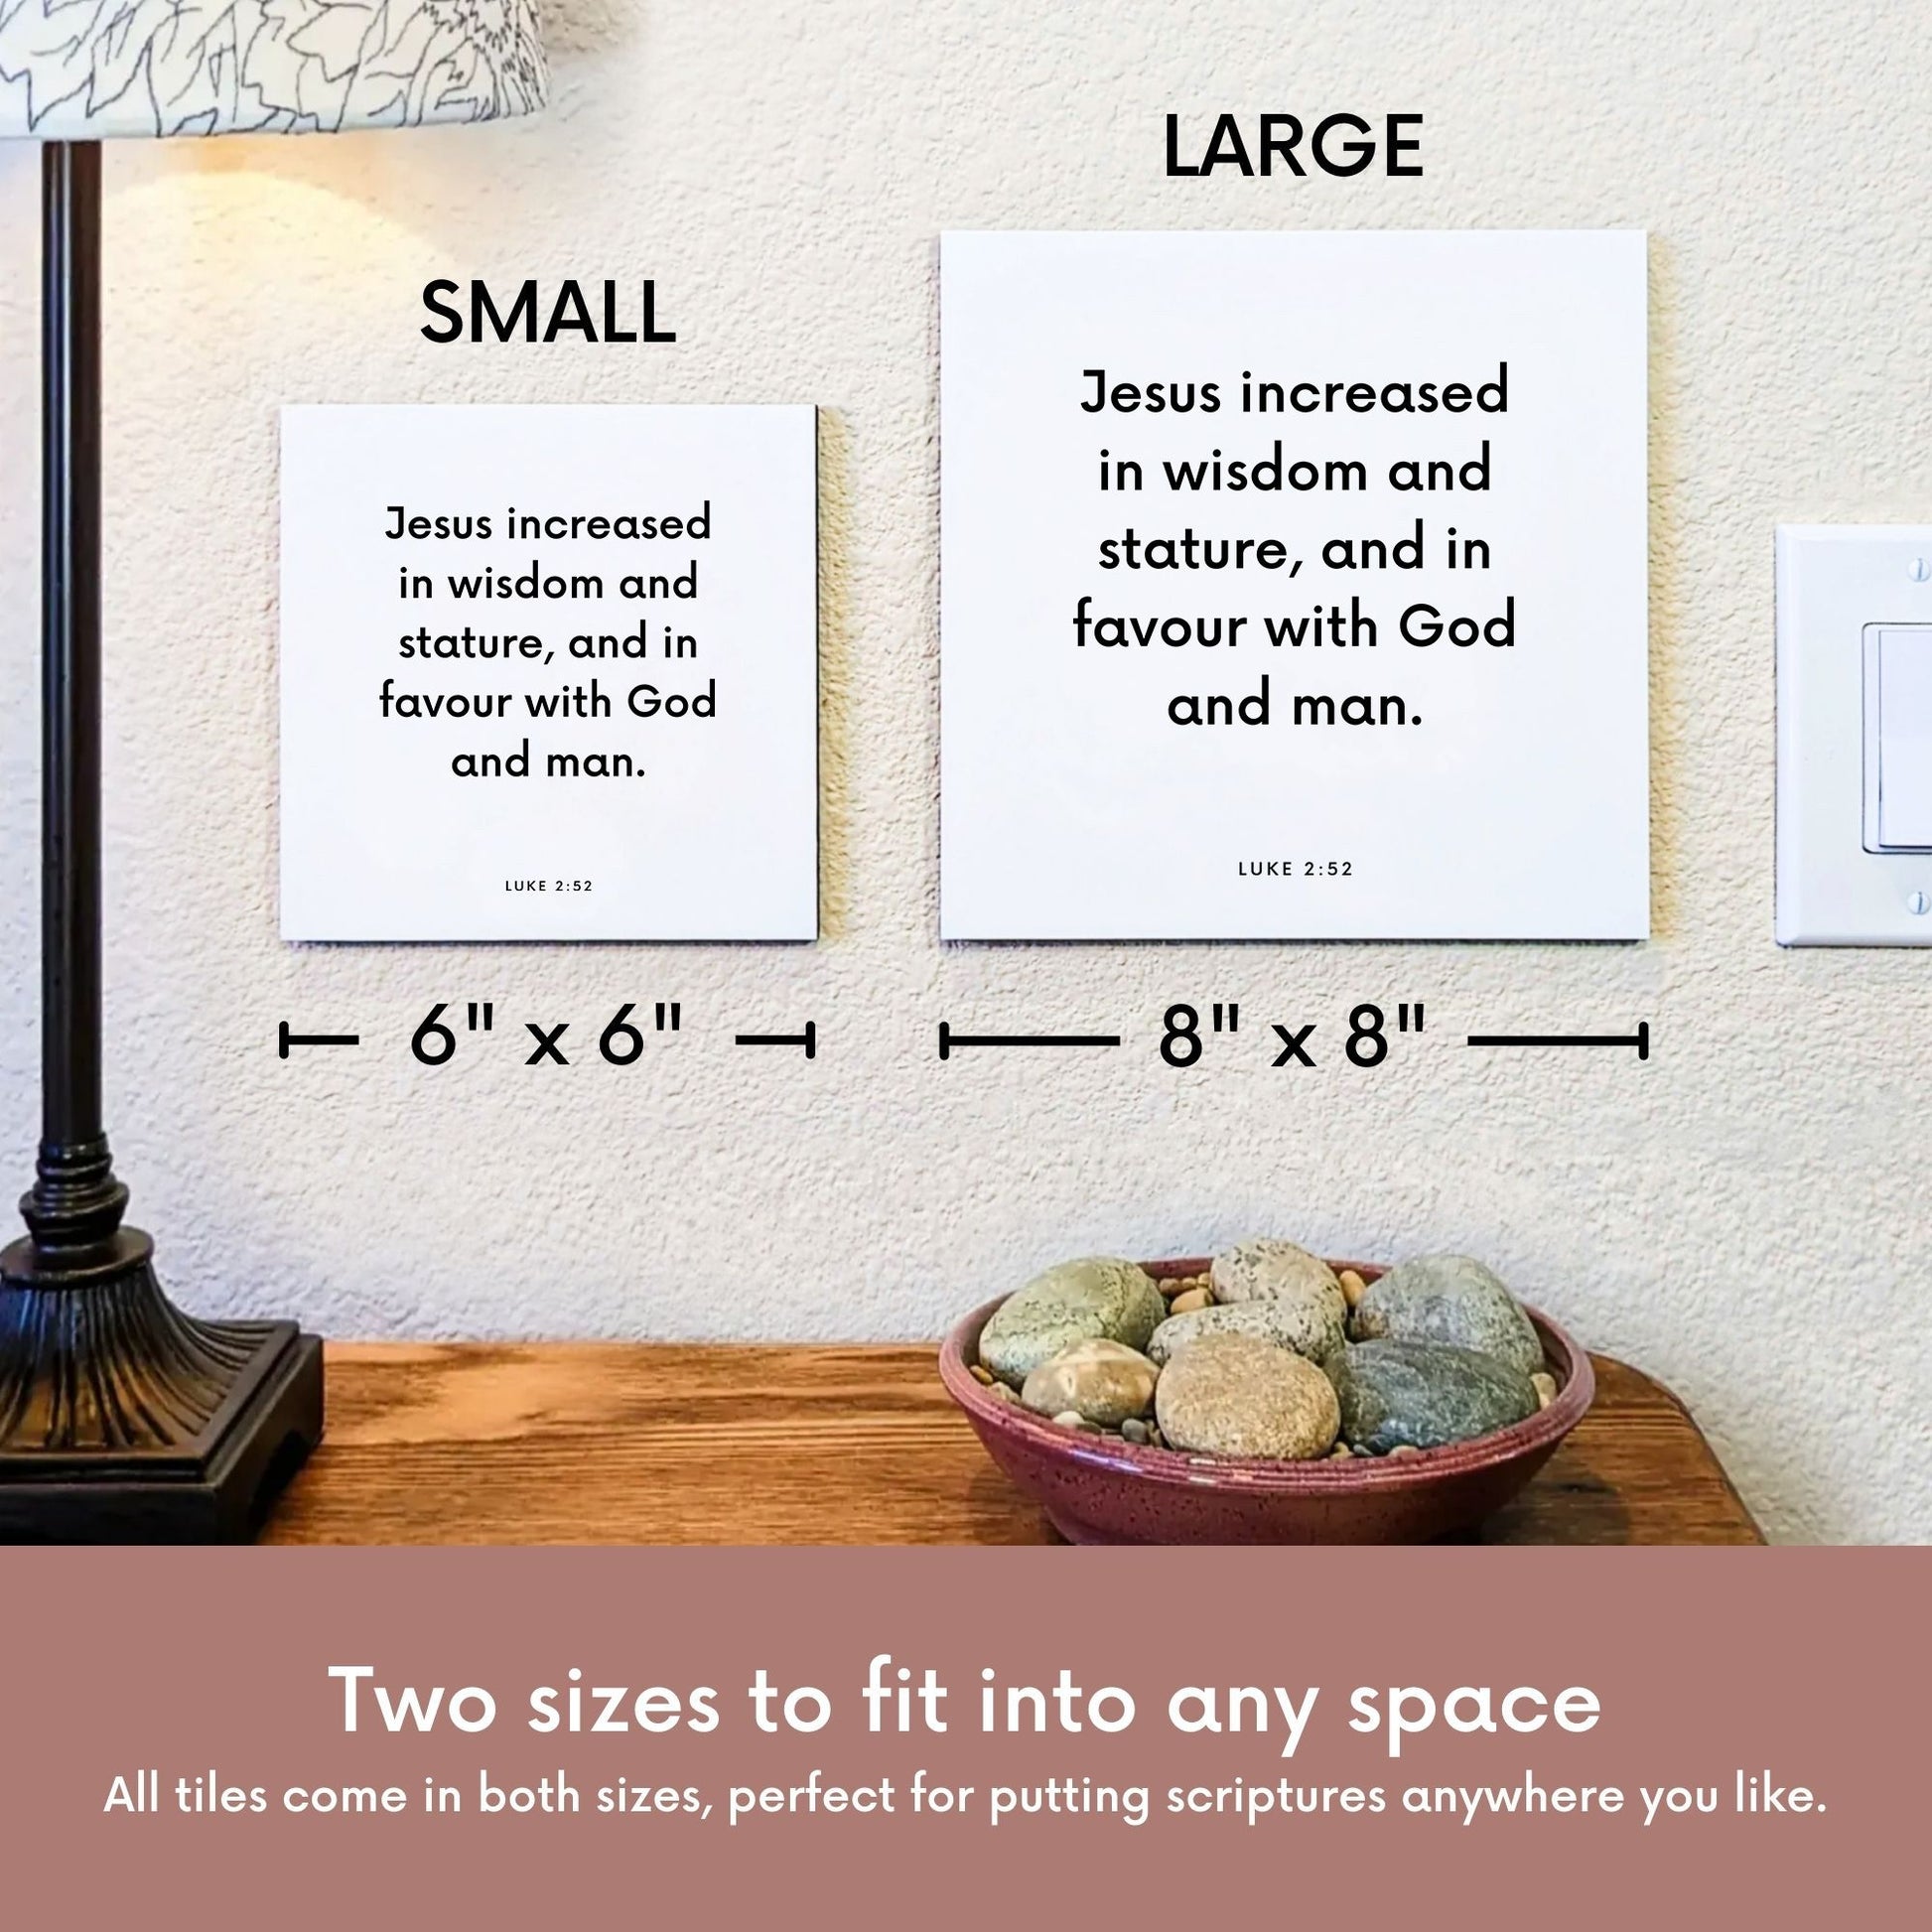 Scripture tile size comparison for Luke 2:52 - "Jesus increased in wisdom and stature"